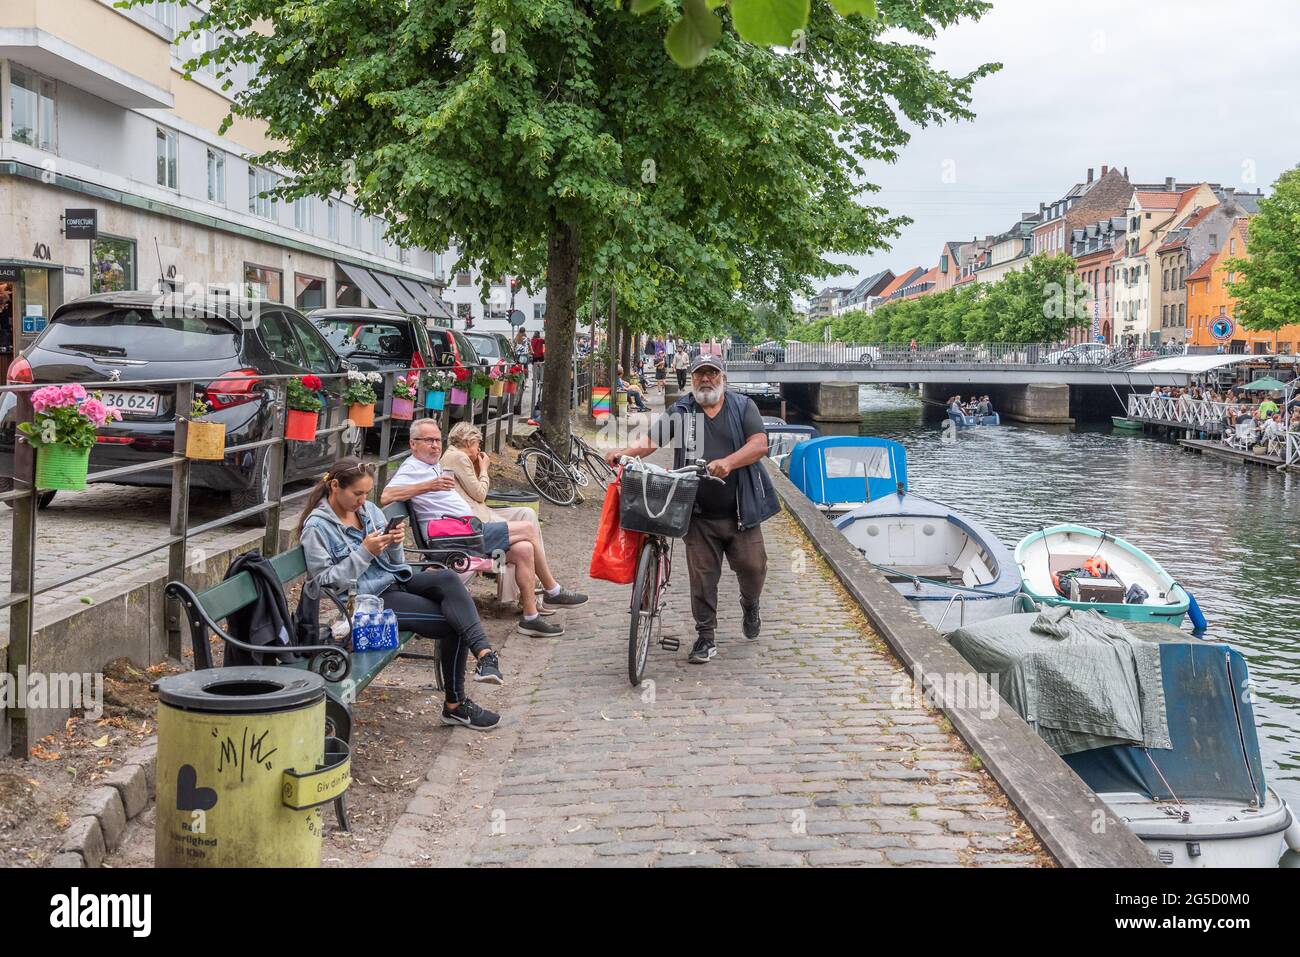 Christianshavn canal, Copenhagen, Denmark Stock Photo